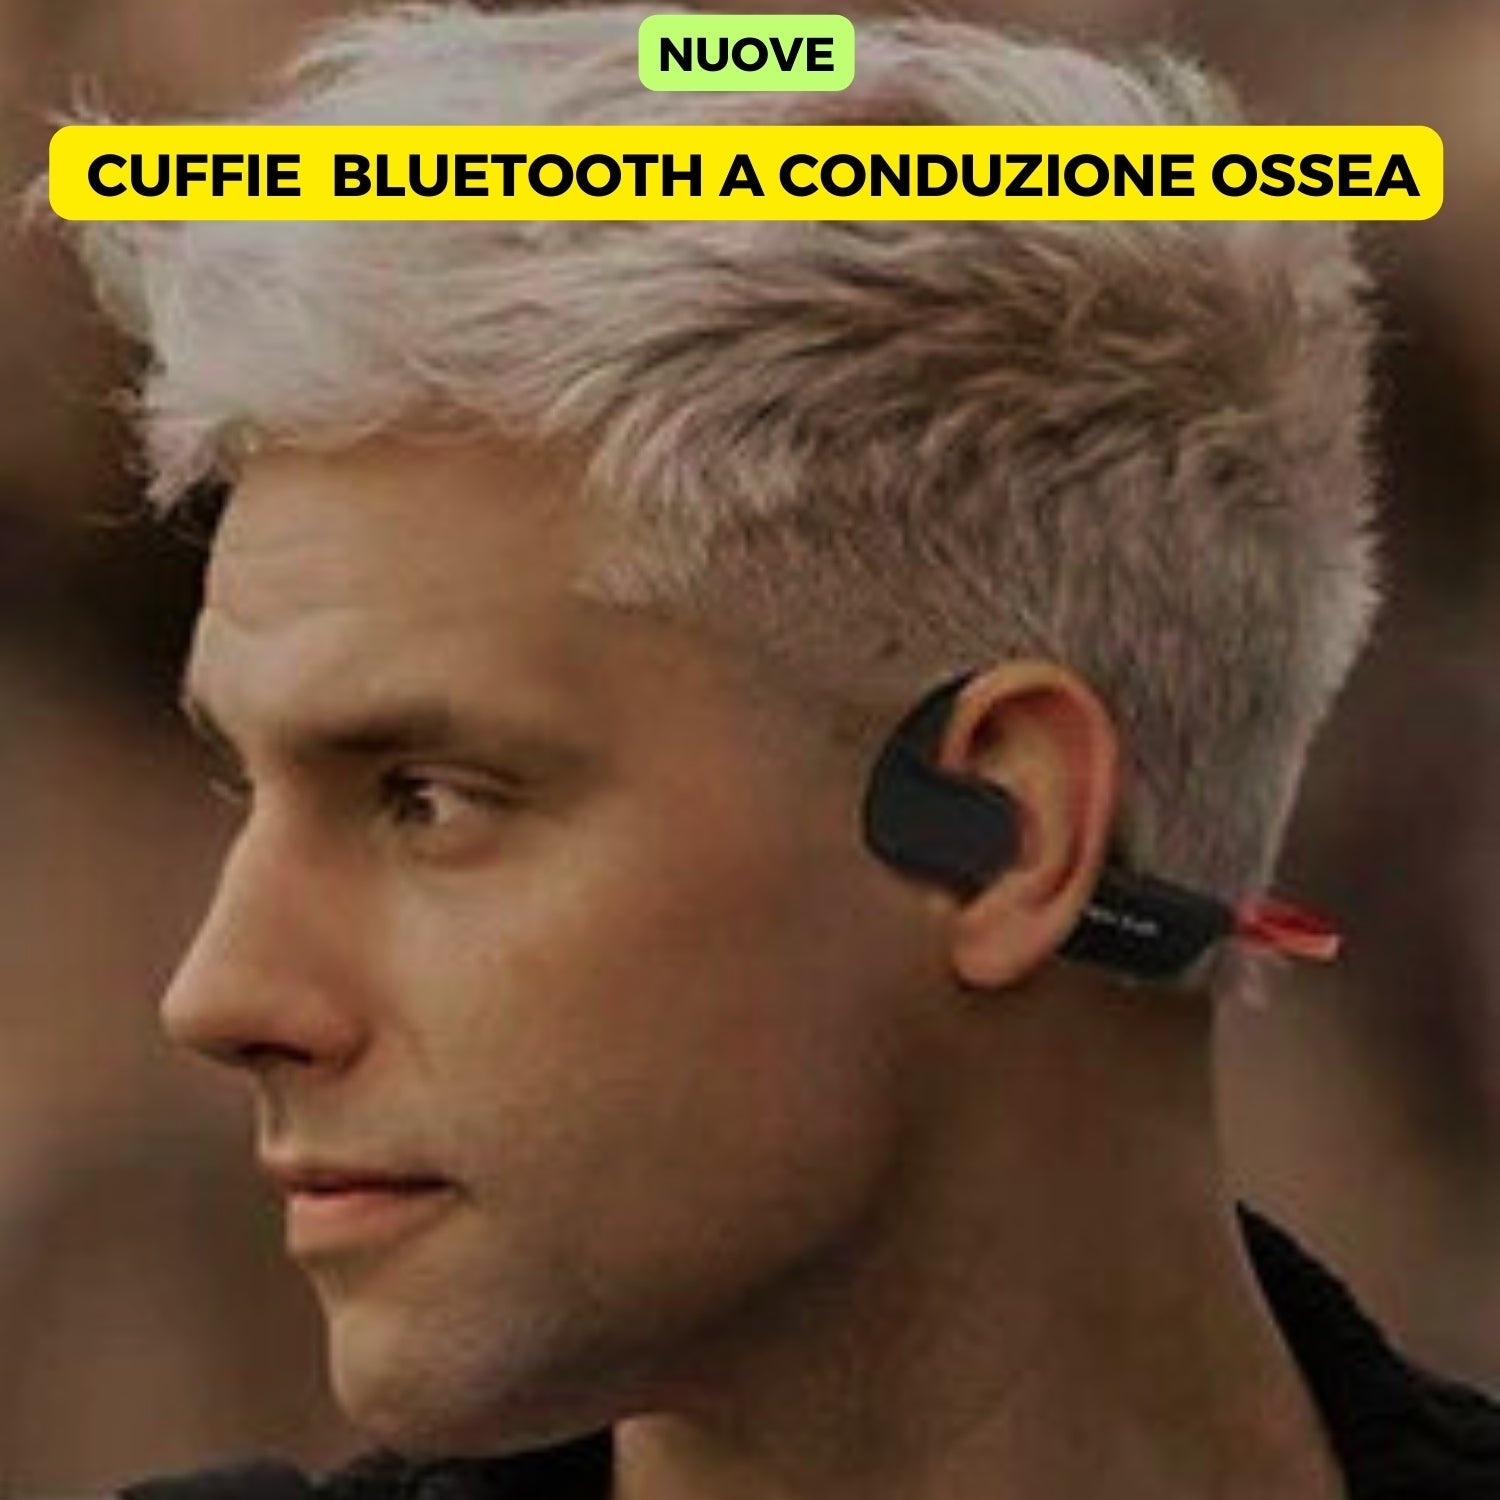 OFFERTA GRATIS Cuffie Wireless Bluetooth a Conduzione Ossea con KIT LUCI per Bici e Monopattino : Luce Posteriore+Anteriore.